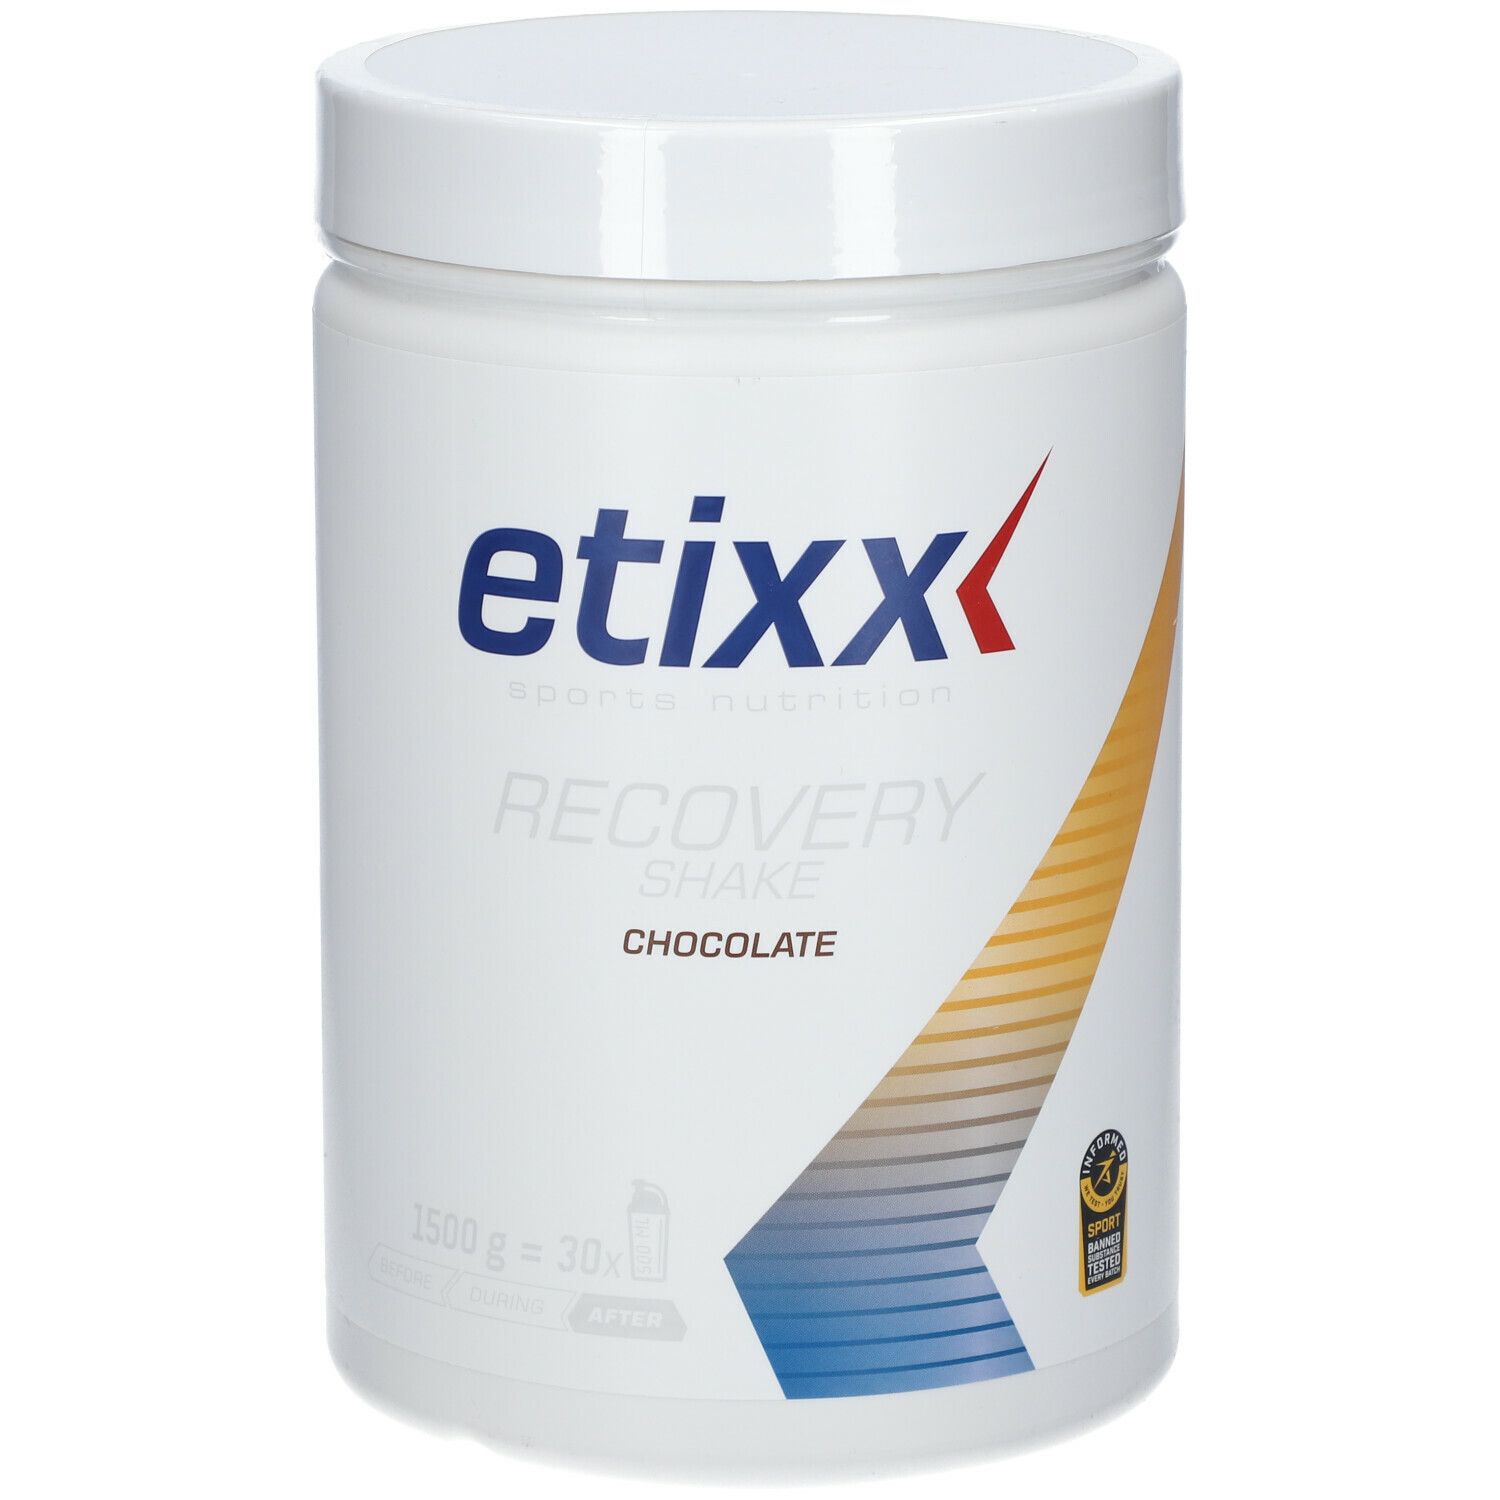 Etixx Recovery Shake Chocolat